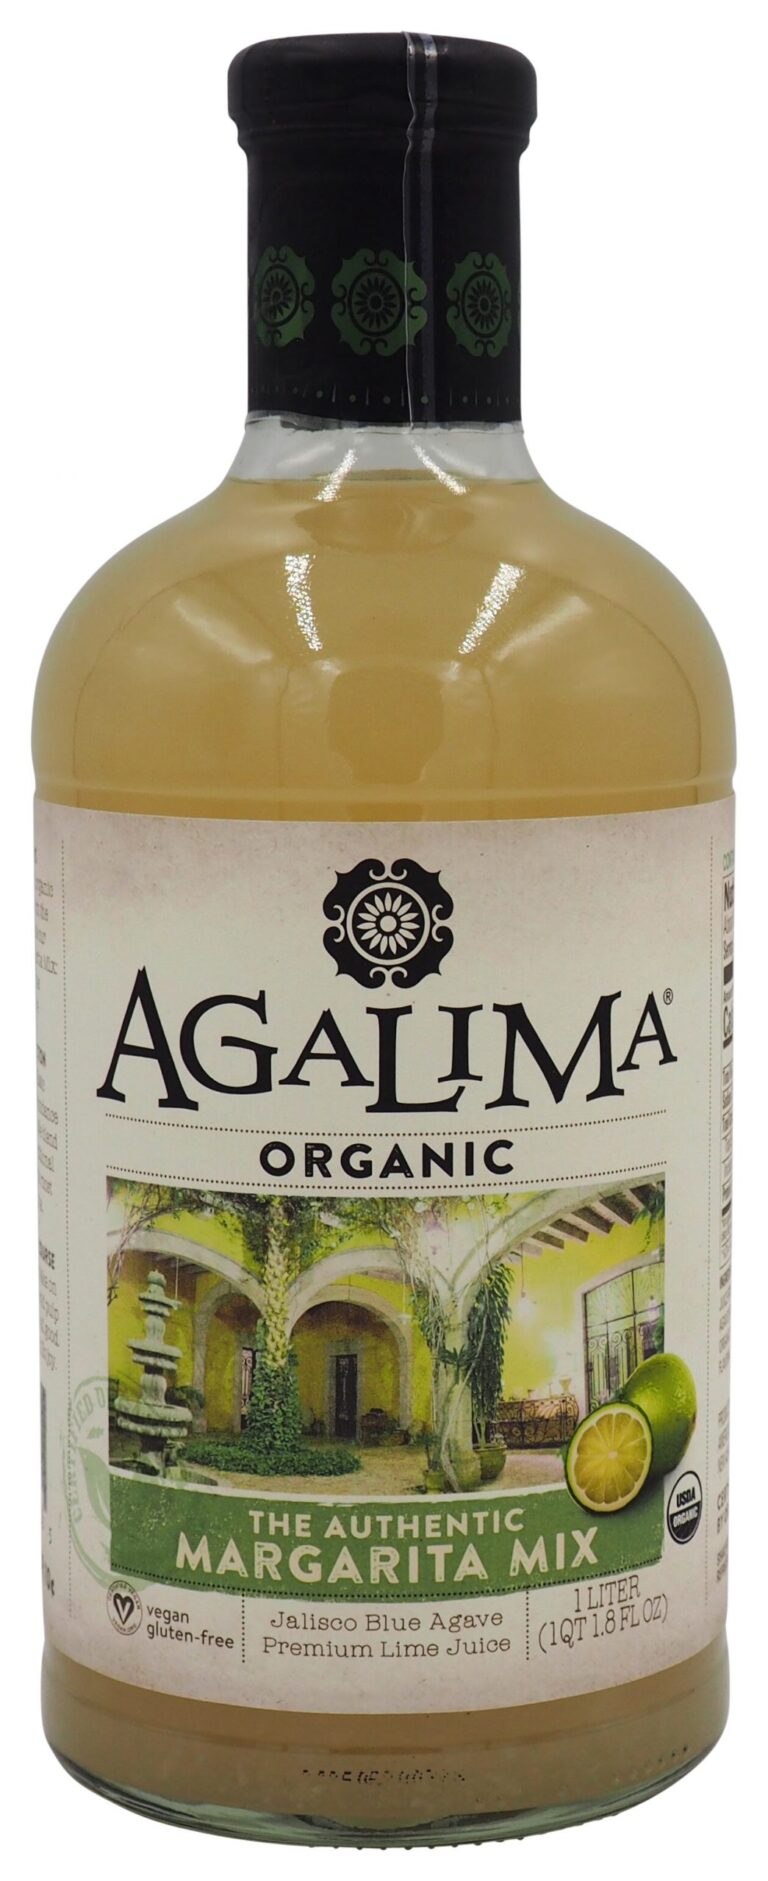 Agalima Organic Margarita Mix (1 Liter)